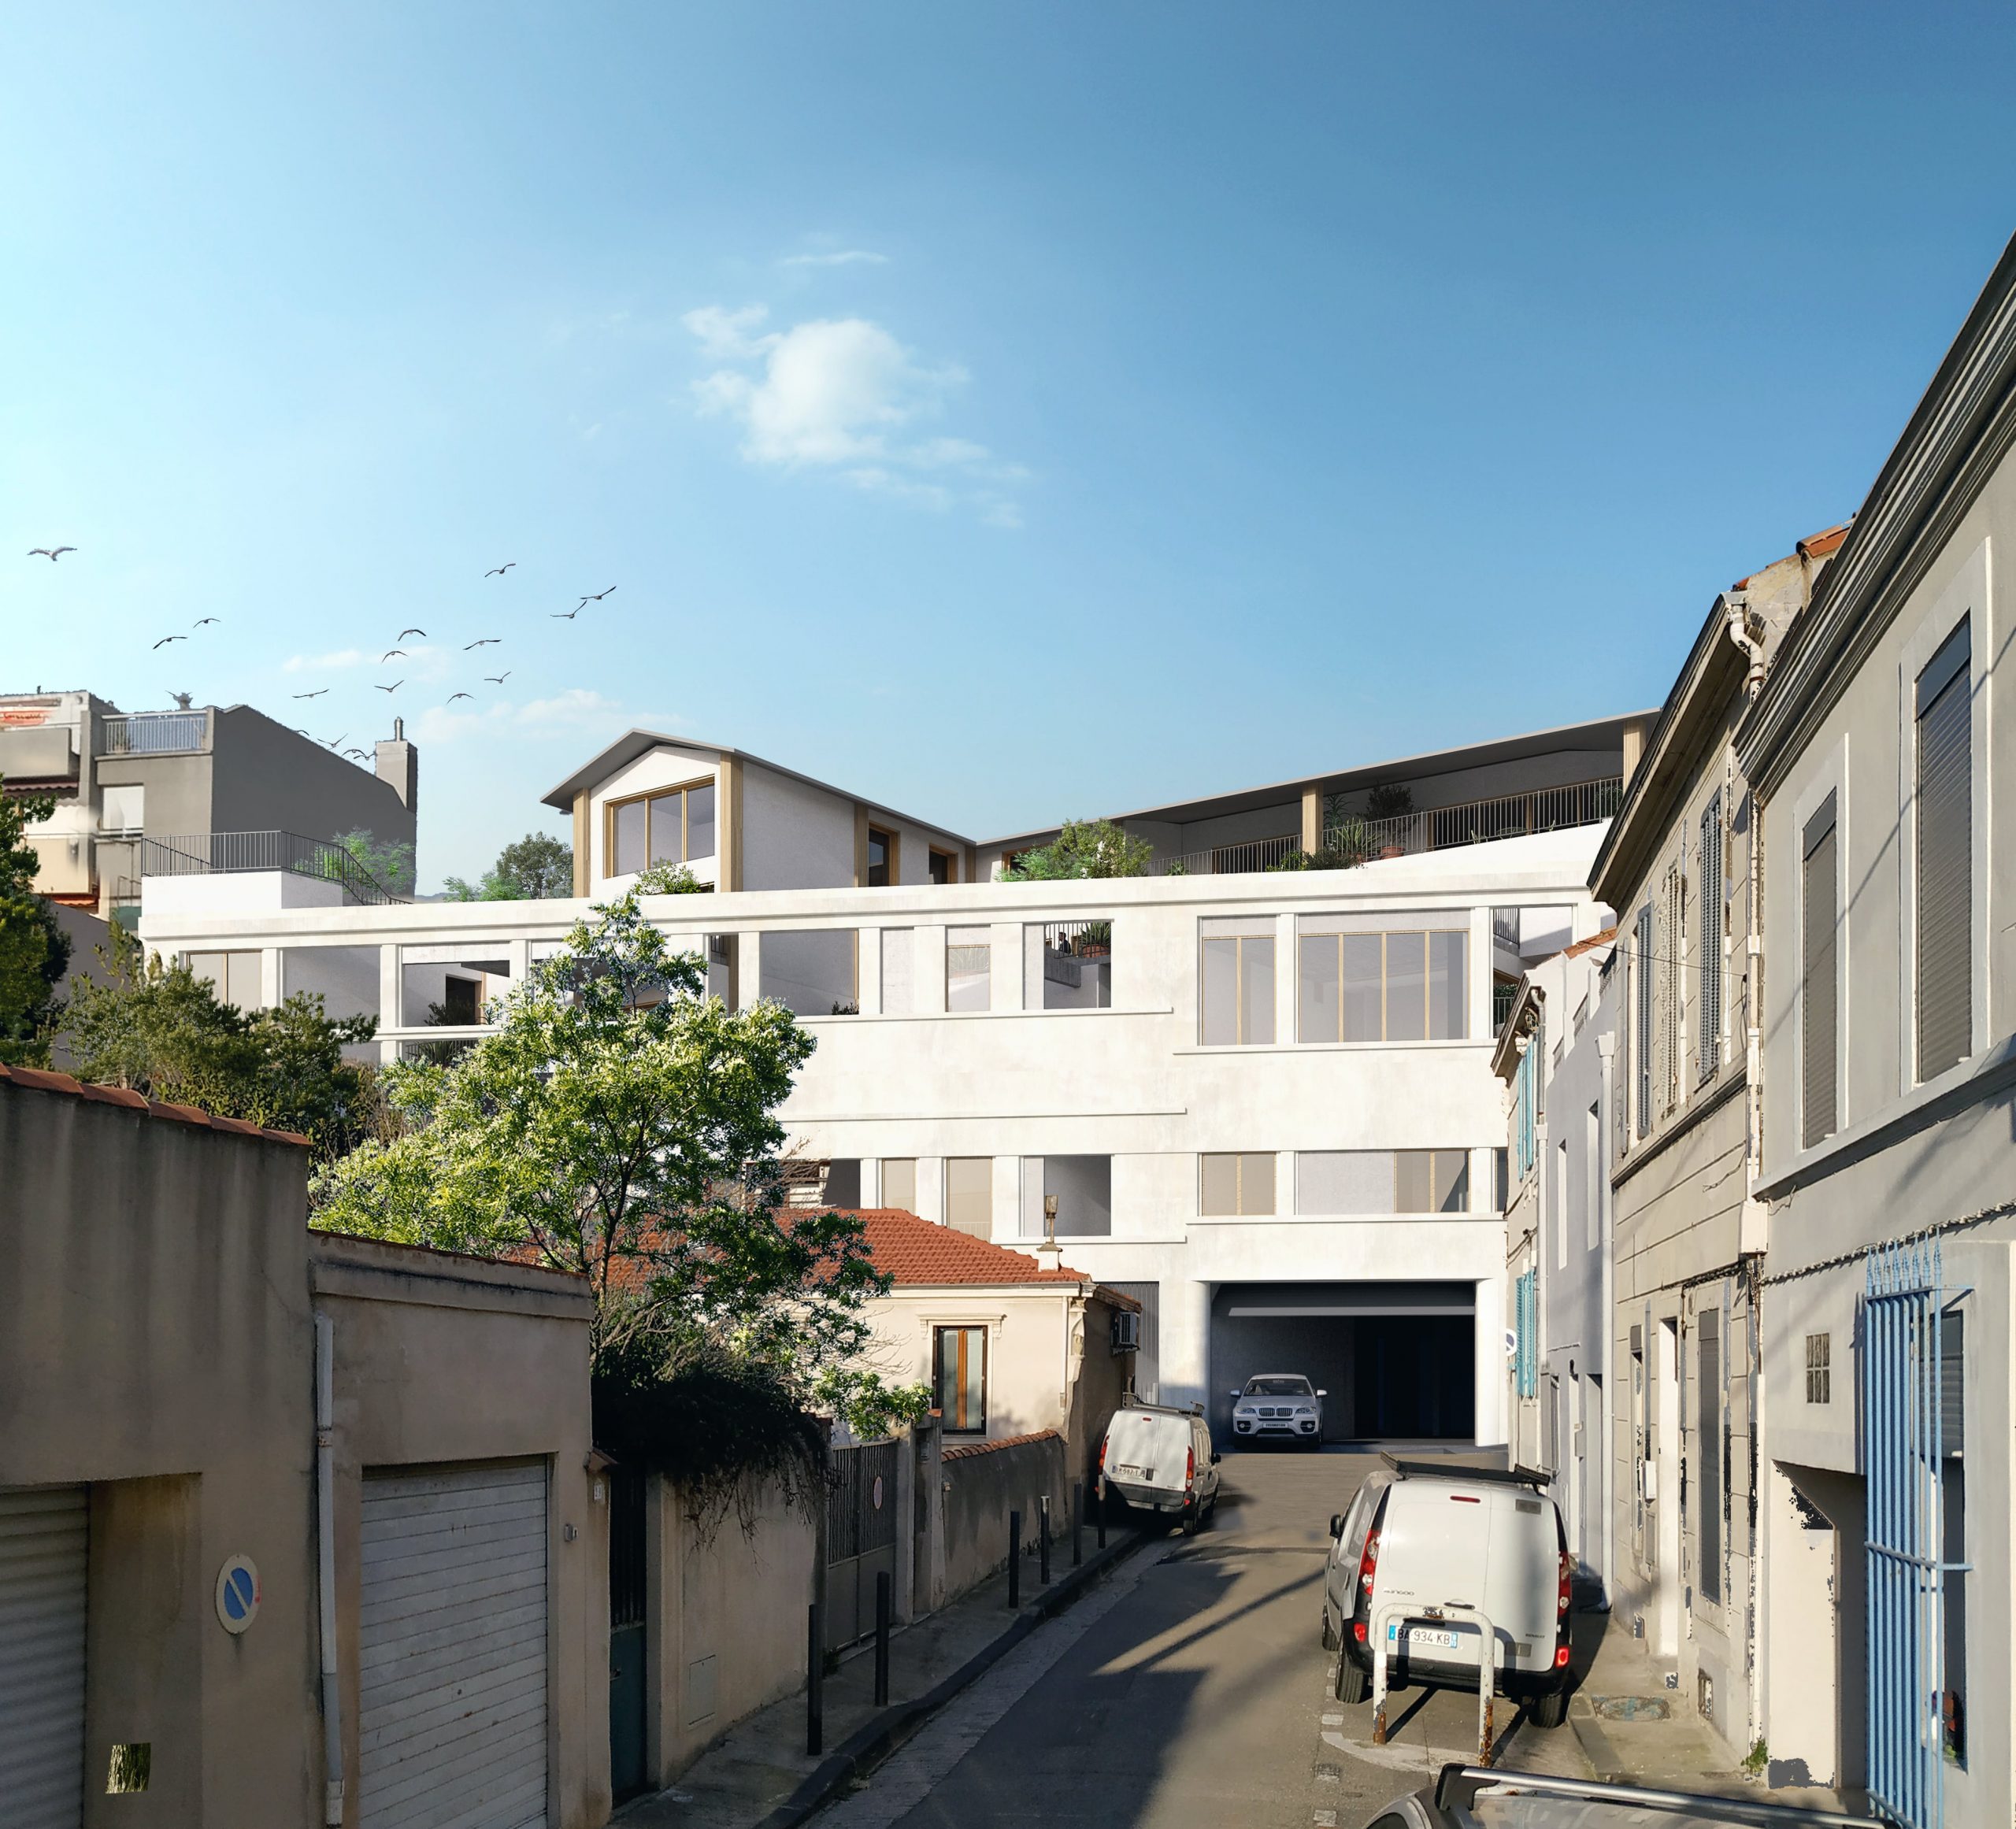 Logements - rue Michel Gachet - Marseille - Caractère Spécial